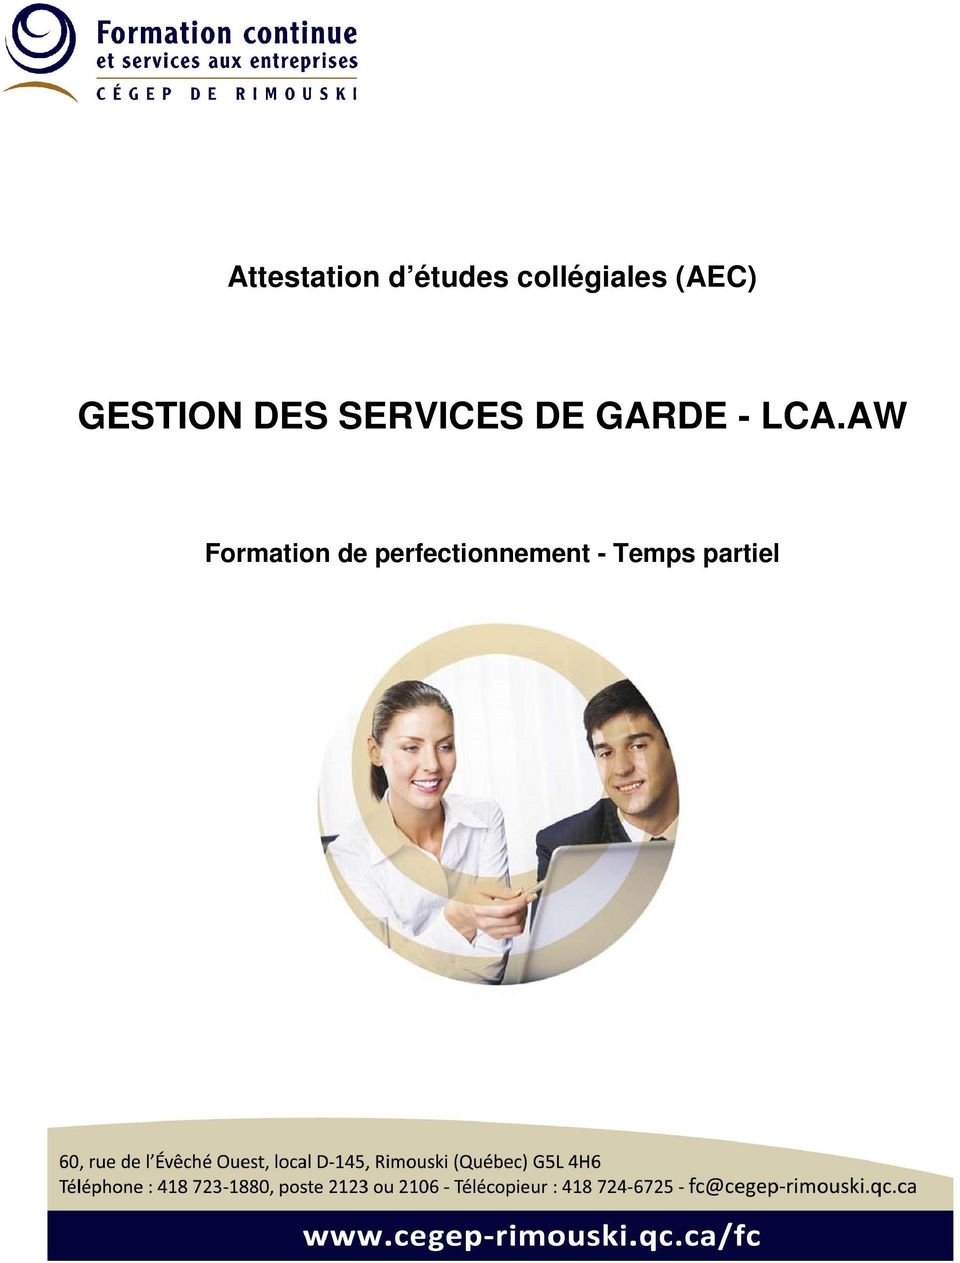 SERVICES DE GARDE - LCA.